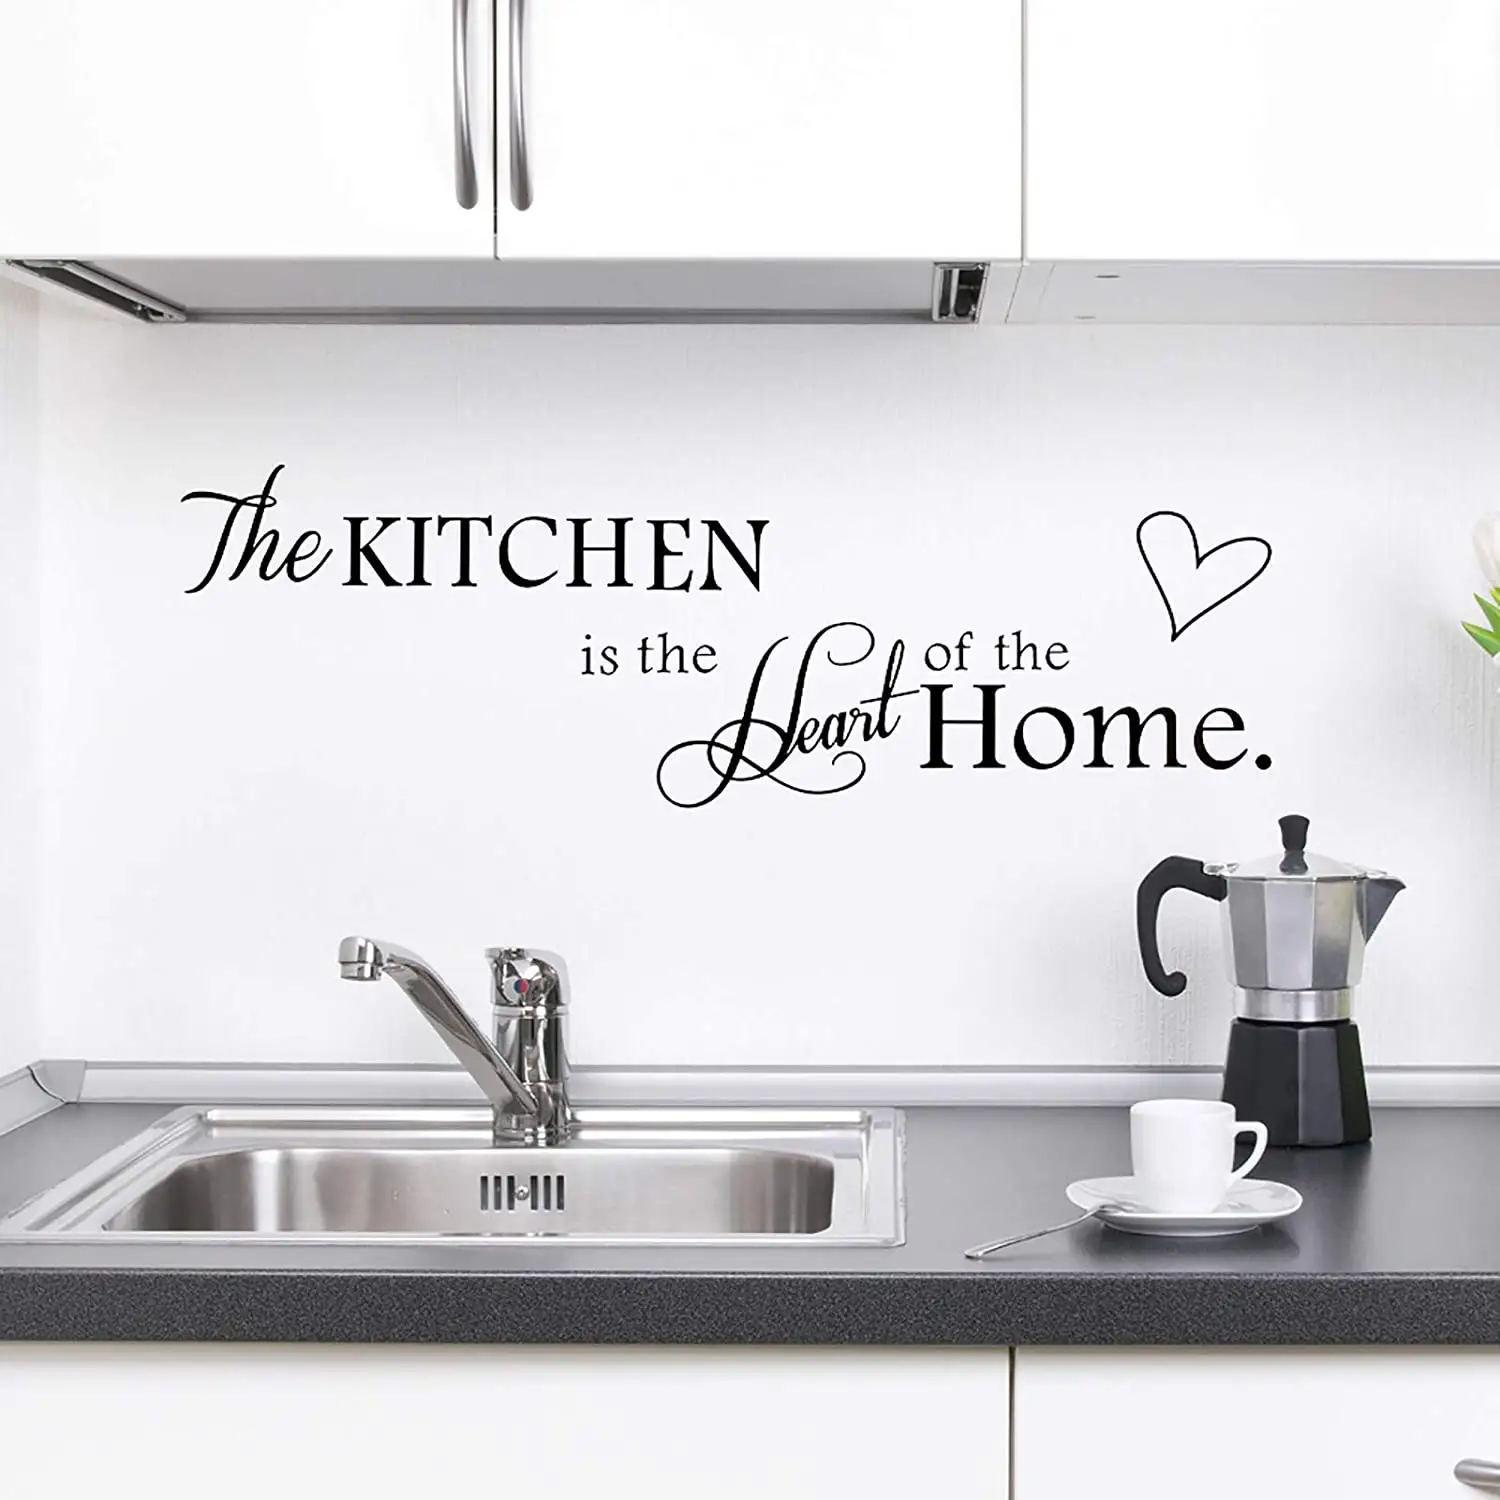 Décoration de la maison PVC imperméable amovible vinyle cuisine salle à manger cuisine autocollant mural pour carreaux cuisine